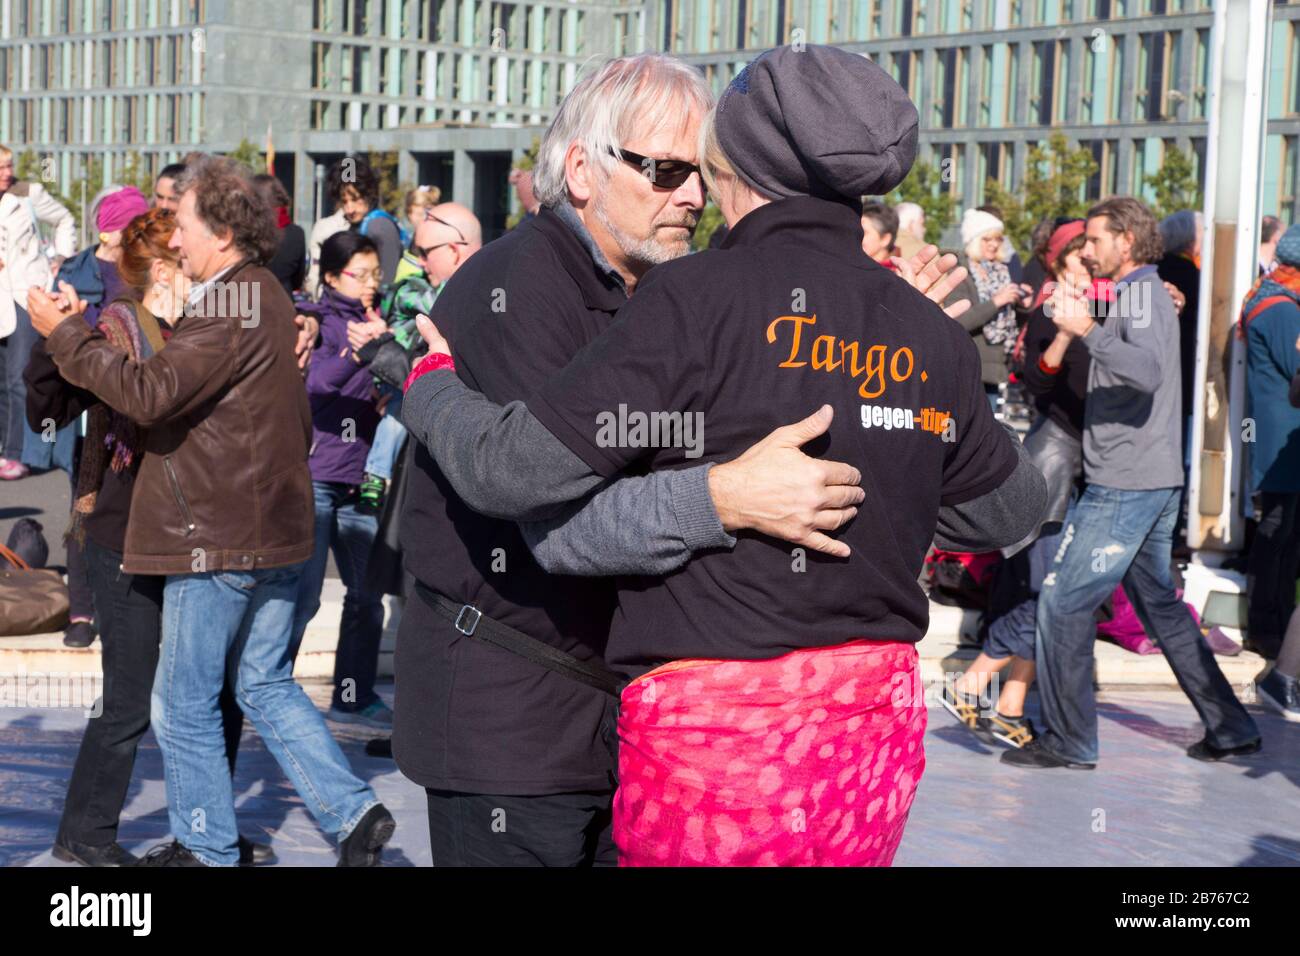 Unter dem Motto Tango gegen TIP tanzen CETA und TASA Tango-Freunde am 10.10.15 auf der Kronprinzenbrücke. Zehntausende Menschen versammelten sich, um gegen das Freihandelsabkommen TTIP zu demonstrieren. [Automatisierte Übersetzung] Stockfoto